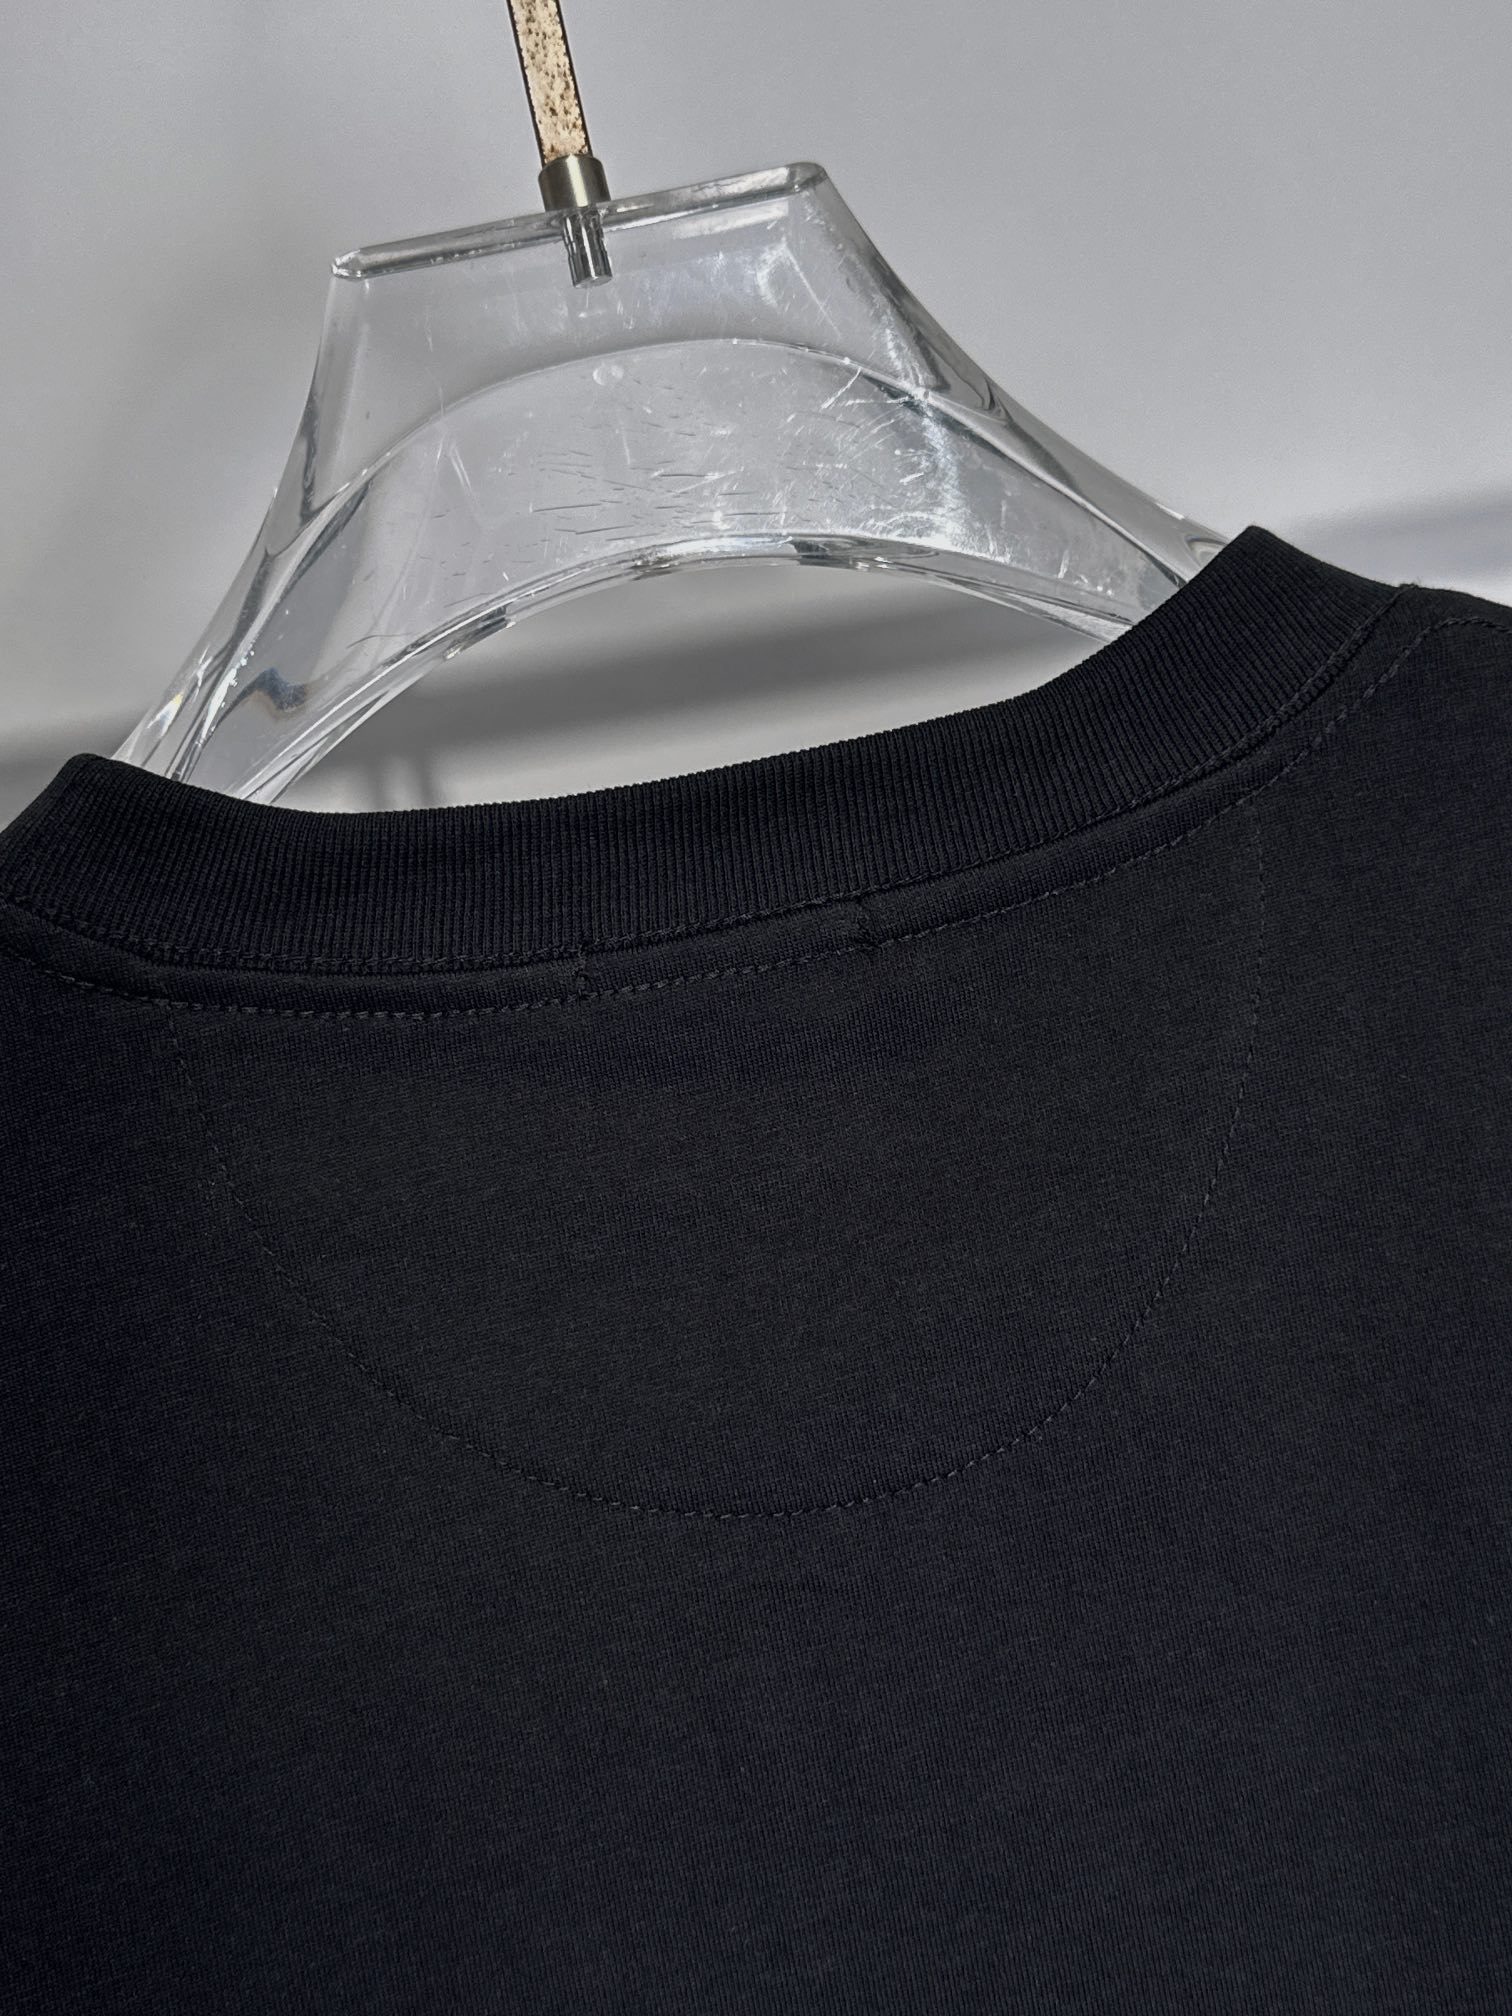 最新最顶级版本胸前Dior字母logo卡通精灵图案最顶级的品质专柜原单短袖顶级制作工艺进口面料专柜款独特